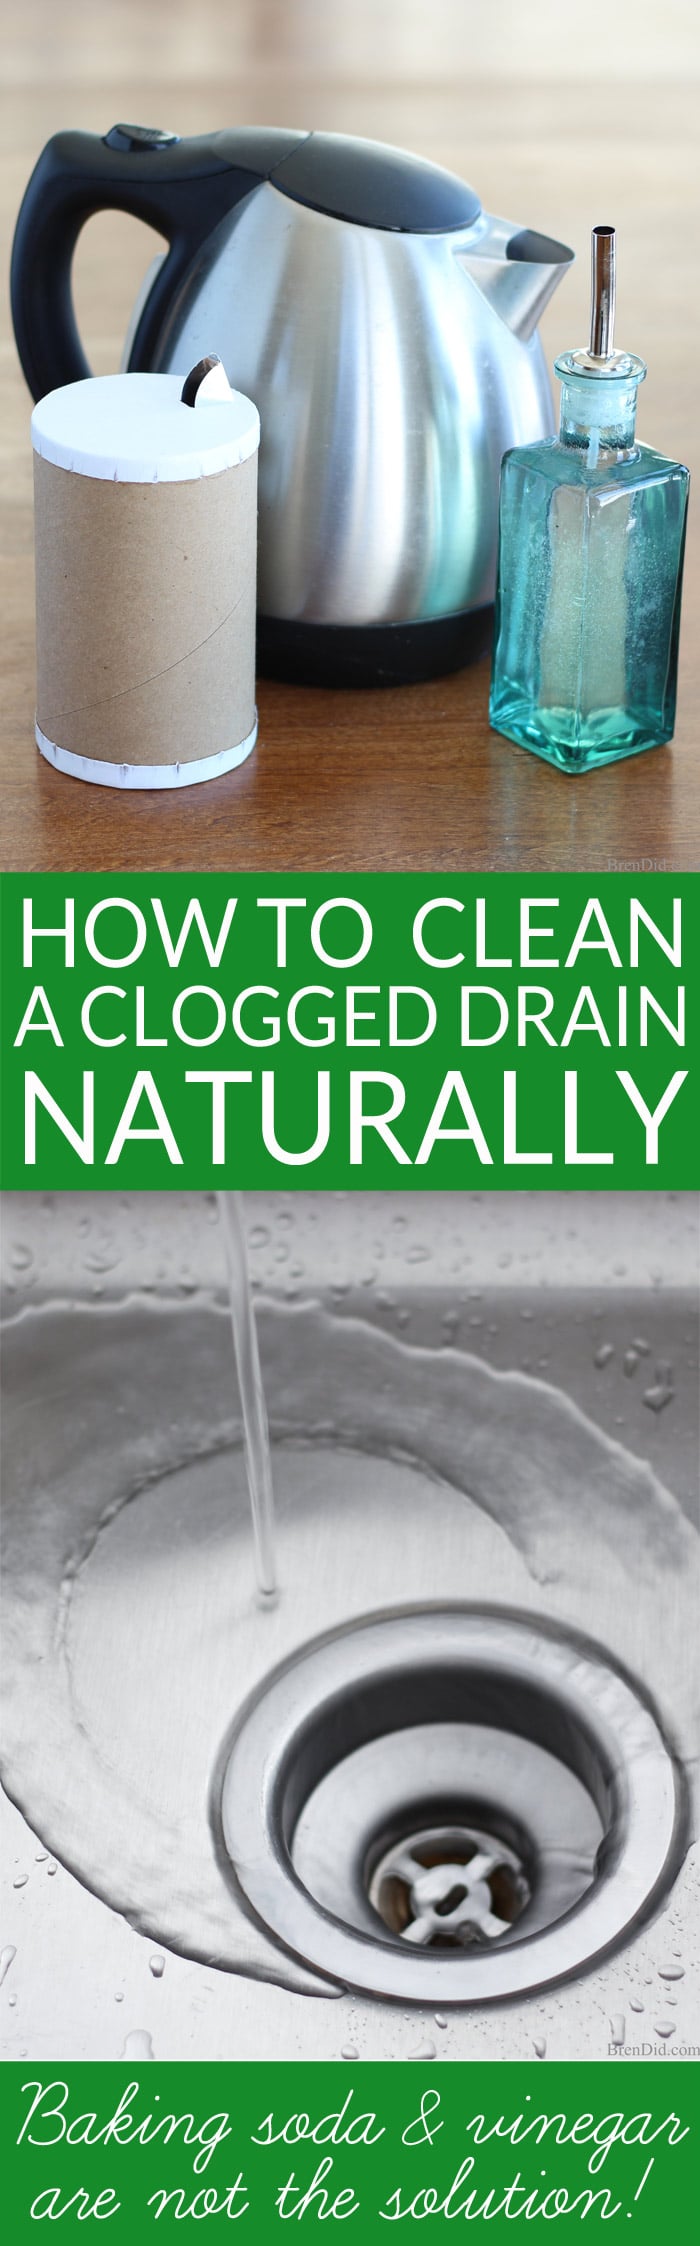 How To Naturally Clean A Clogged Drain, Home Remedies To Clean Bathtub Drain